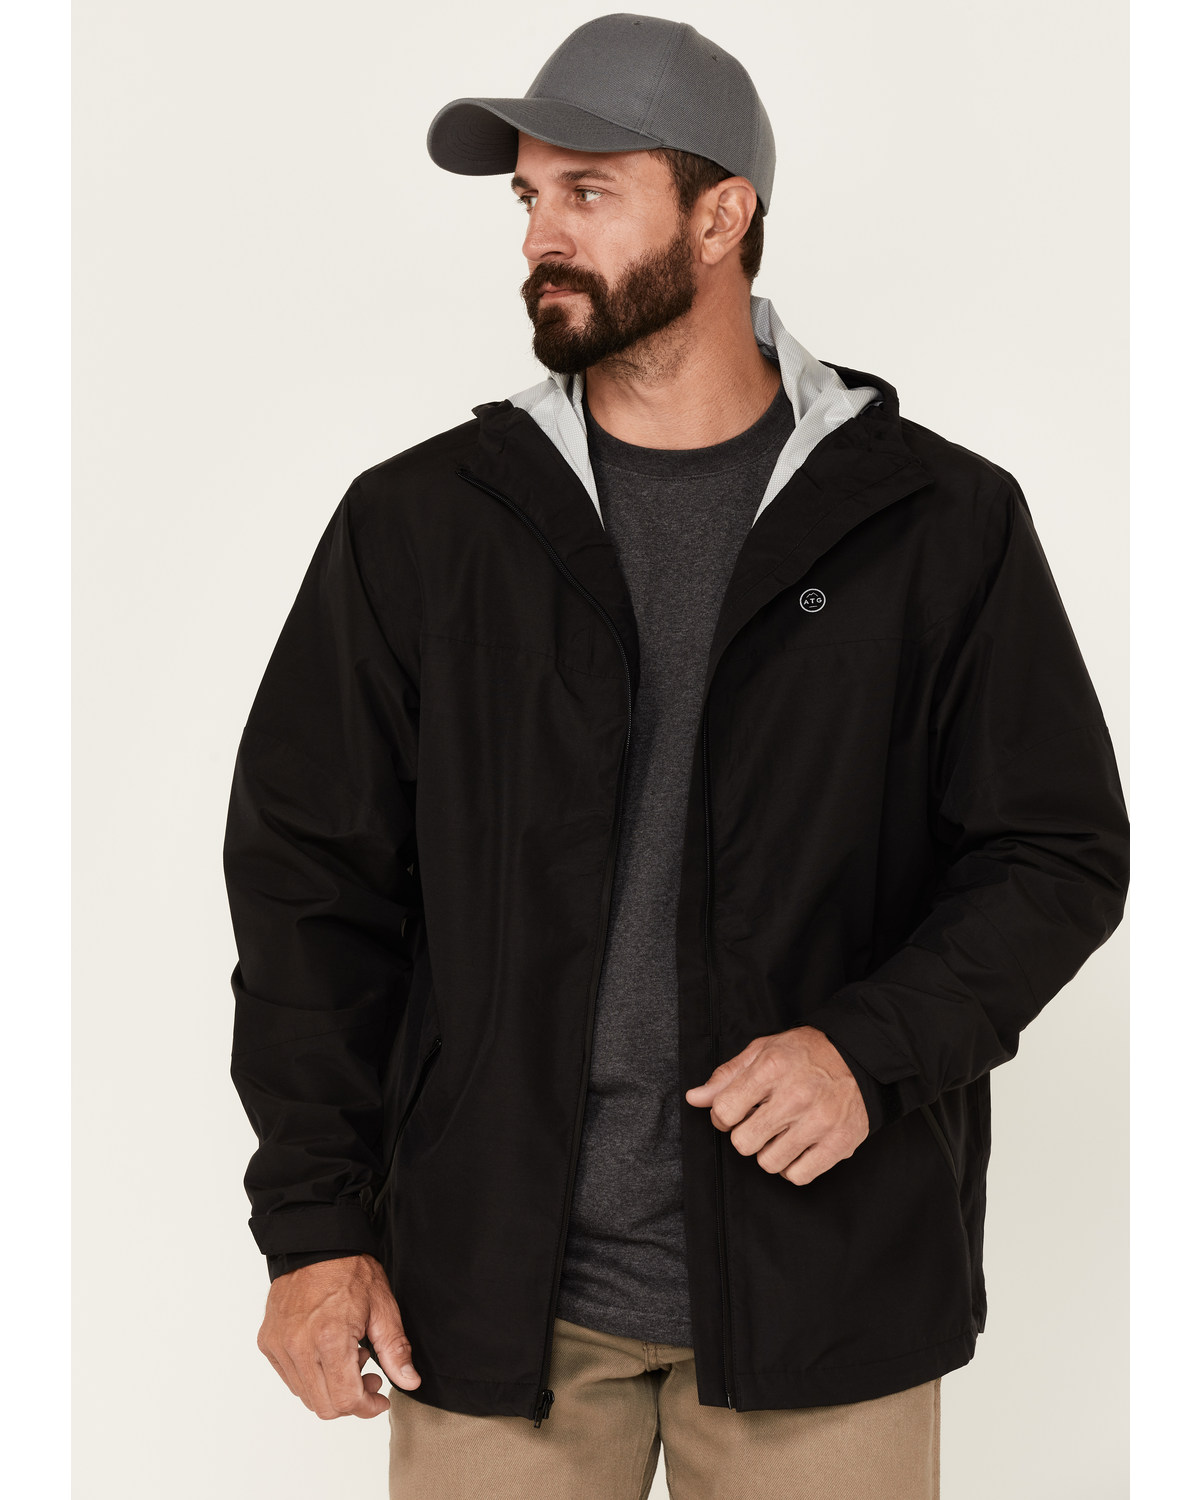 ATG by Wrangler Men's All-Terrain Black Zip-Front Hooded Rain Jacket